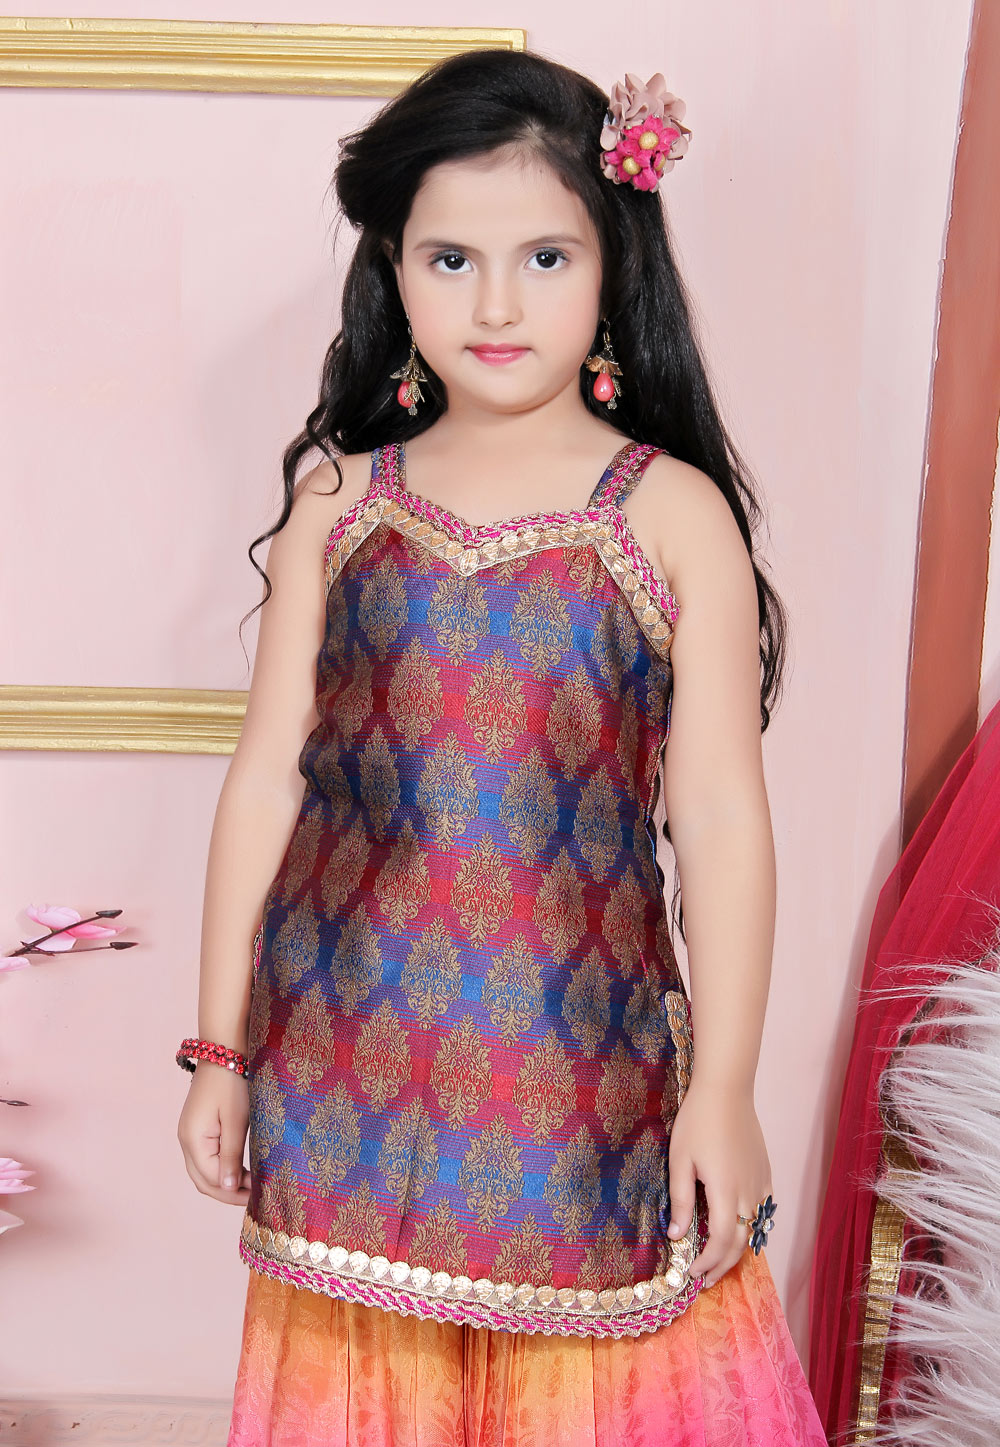 Karva Chauth 2022 Hair Style Ethnic Dress Hair For Salwar Suit Saree Lehnga  Image Of Simple Hairstyle | करवा चौथ के लिए बेस्ट हेयर स्टाइल, सूट, साड़ी  या लहंगा हर ड्रेस में